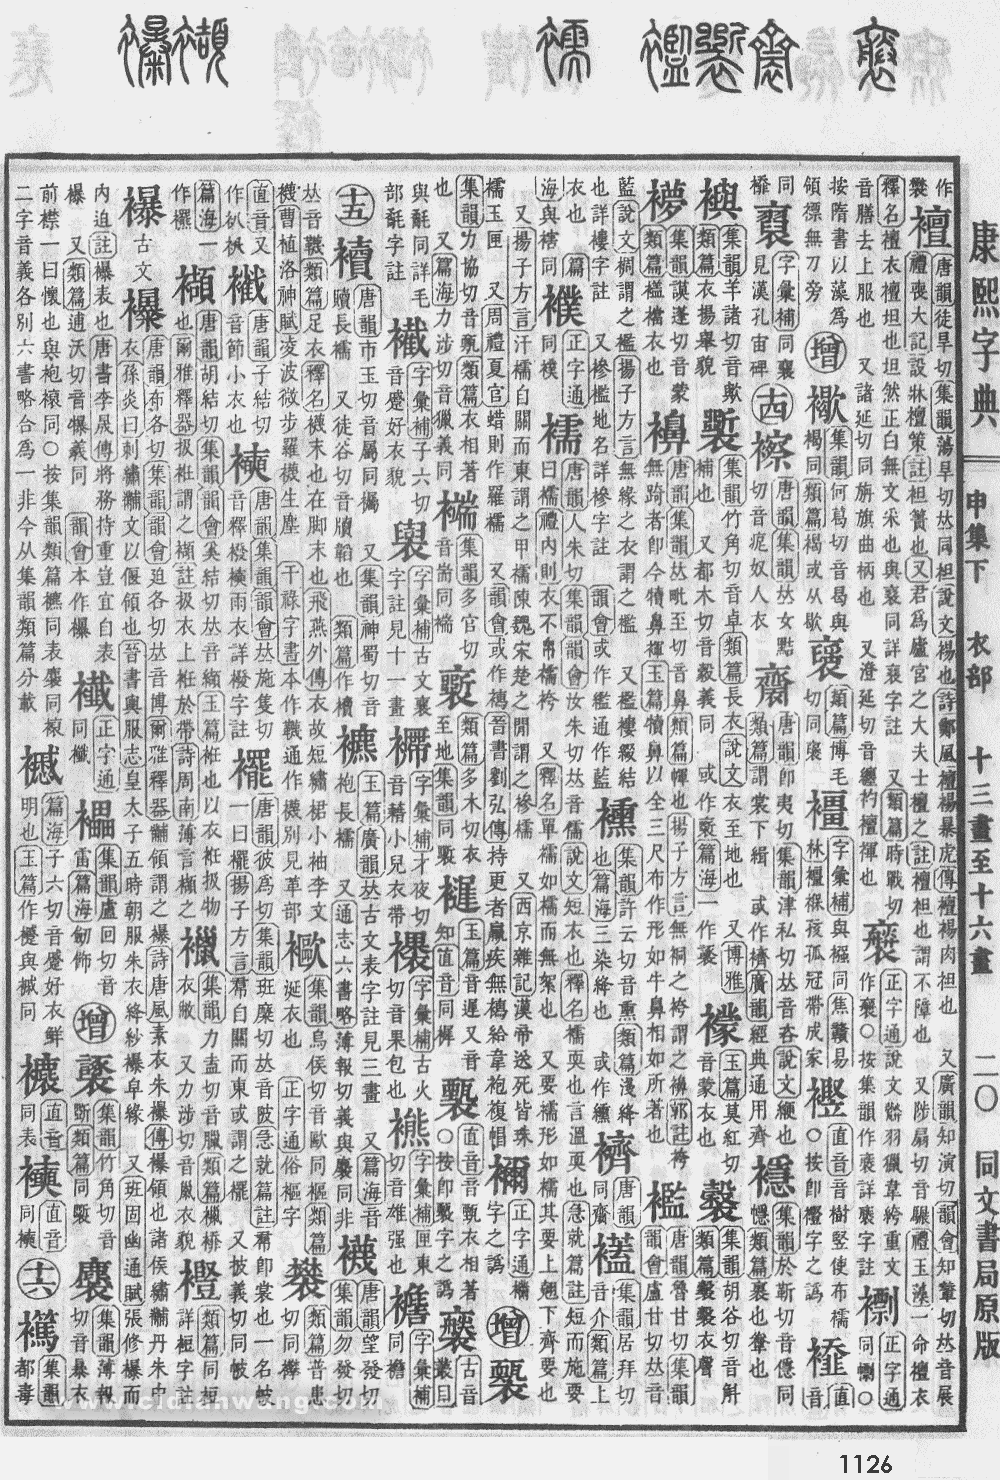 康熙字典掃描版第1126頁